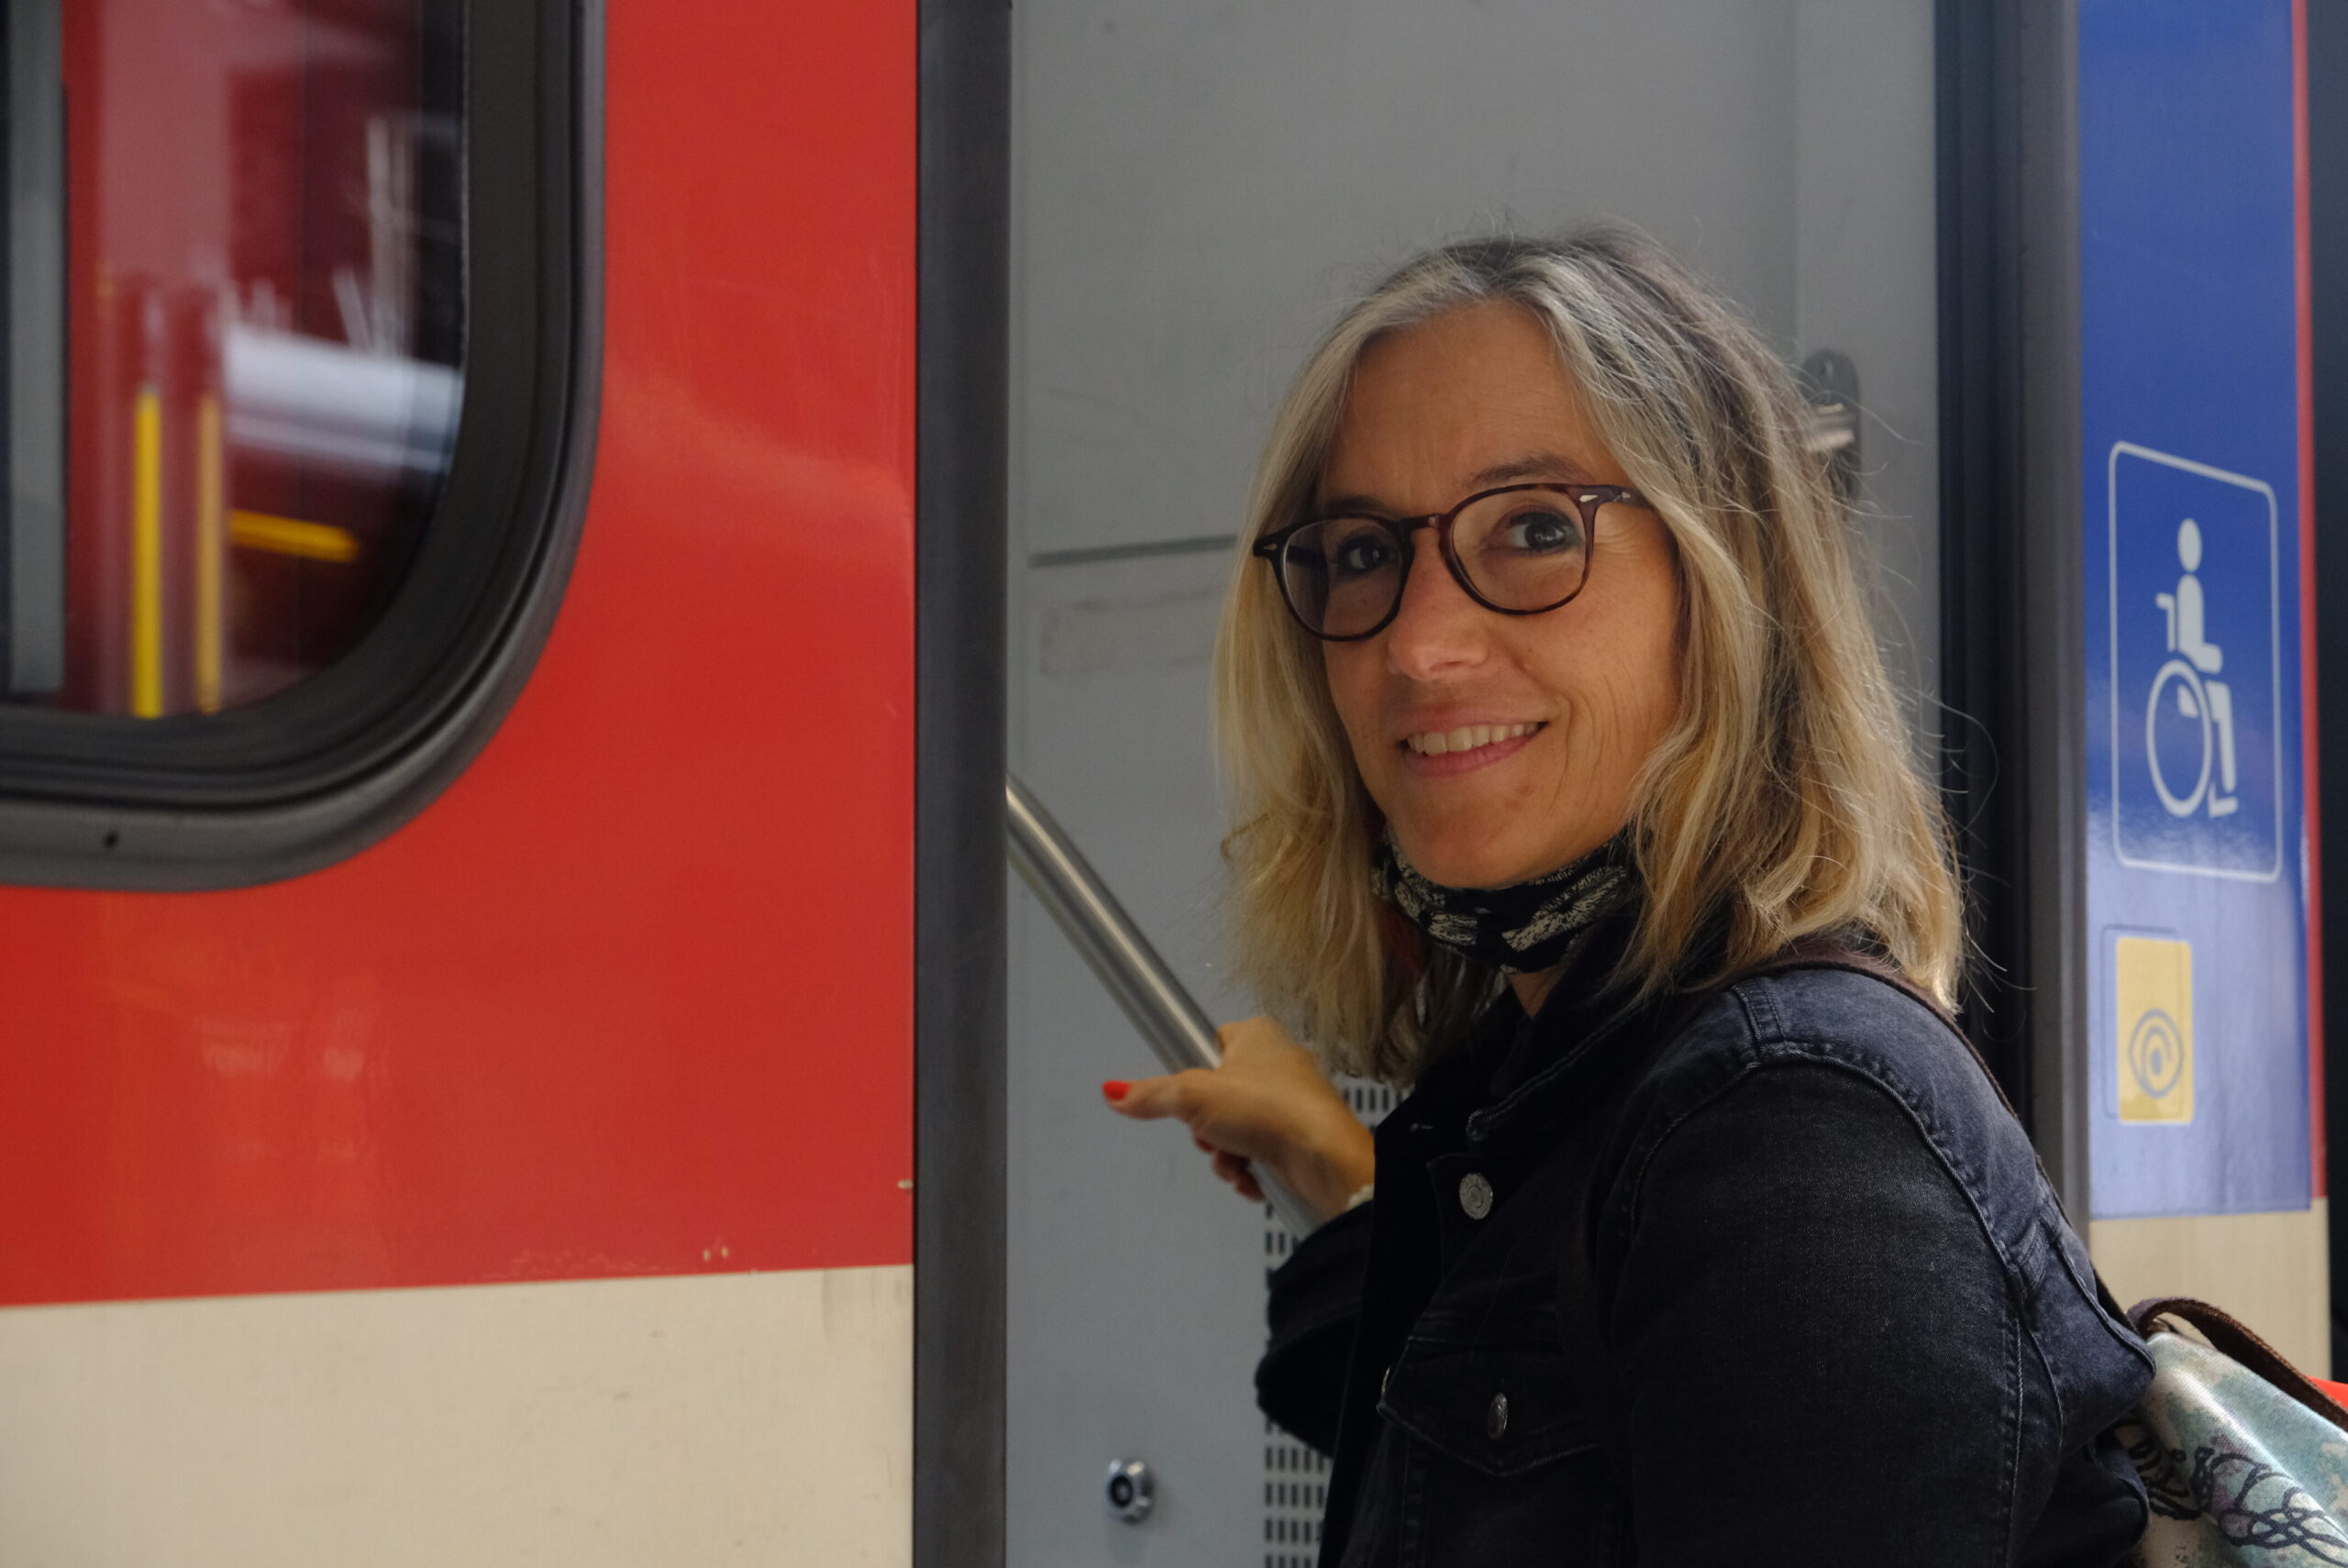 30 ans plus tard, Salomé cherche à retrouver son coup de foudre du train Bâle-Paris